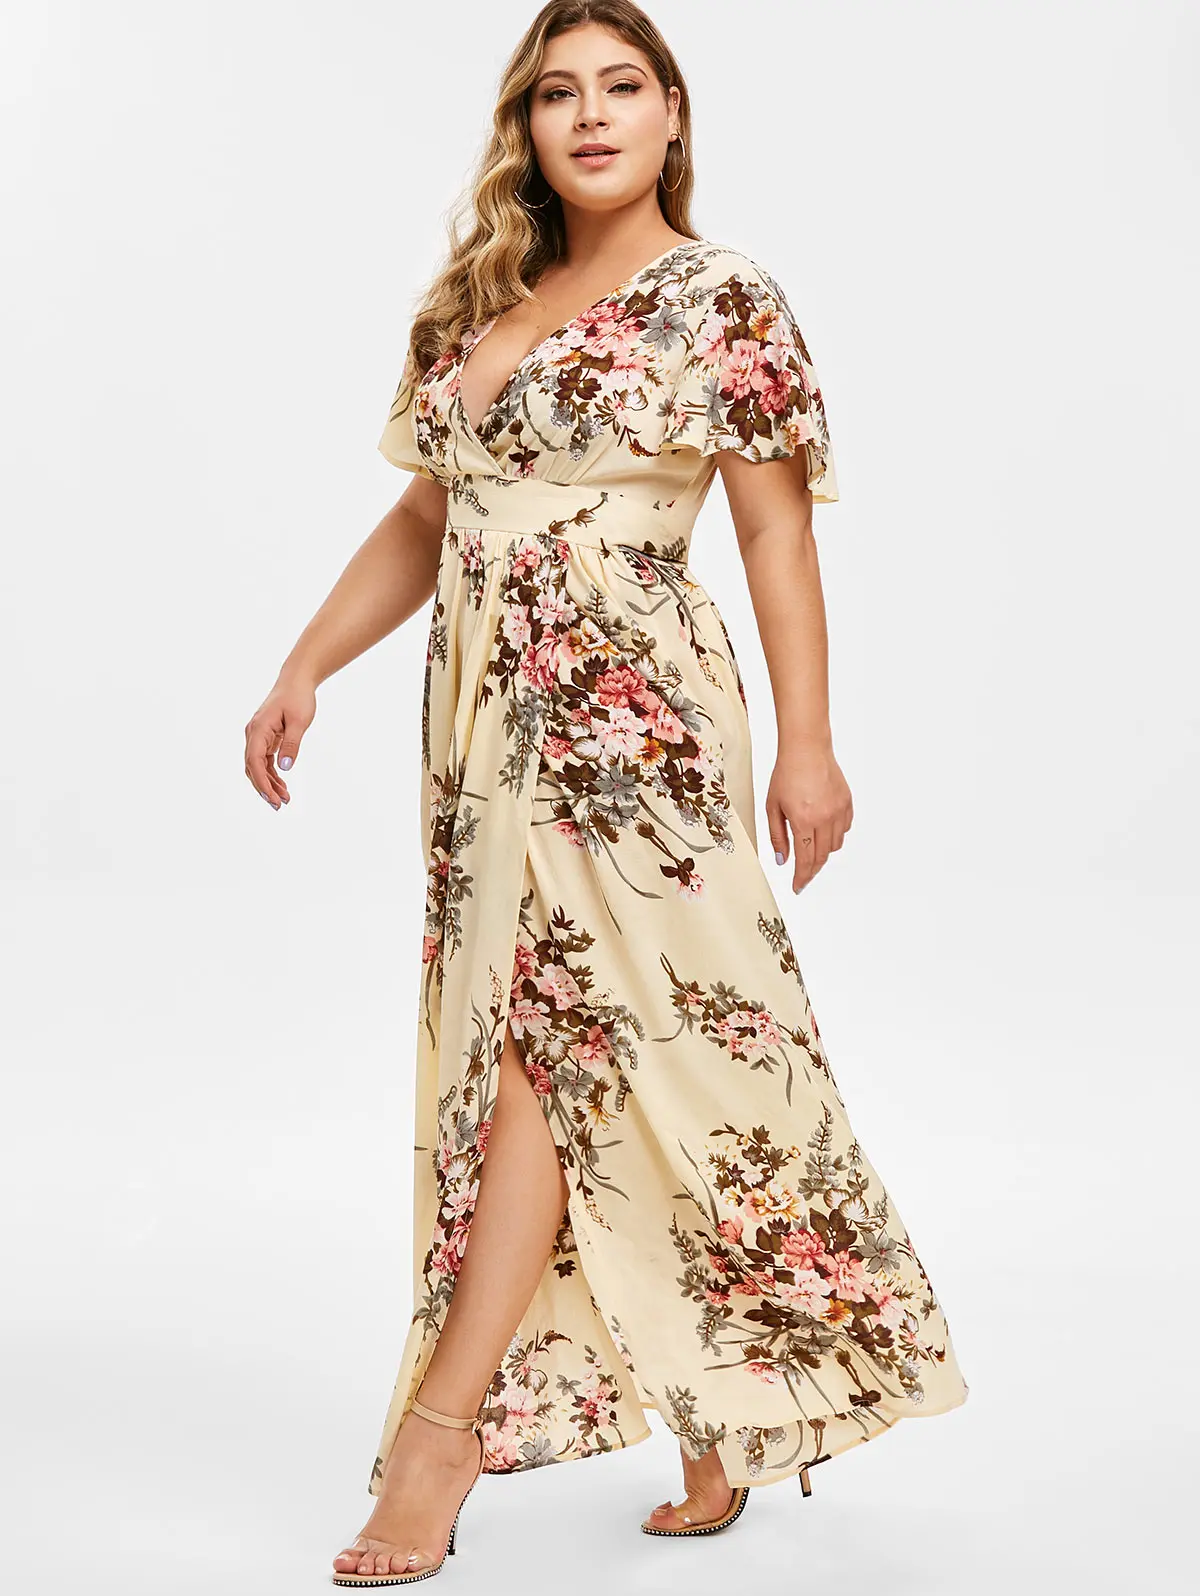 Rosegal размера плюс Погружаясь шеи цветочные Сплит Макси платье с высокой талией v-образным вырезом платье А-силуэта летнее облегающее женское вечернее платье халат